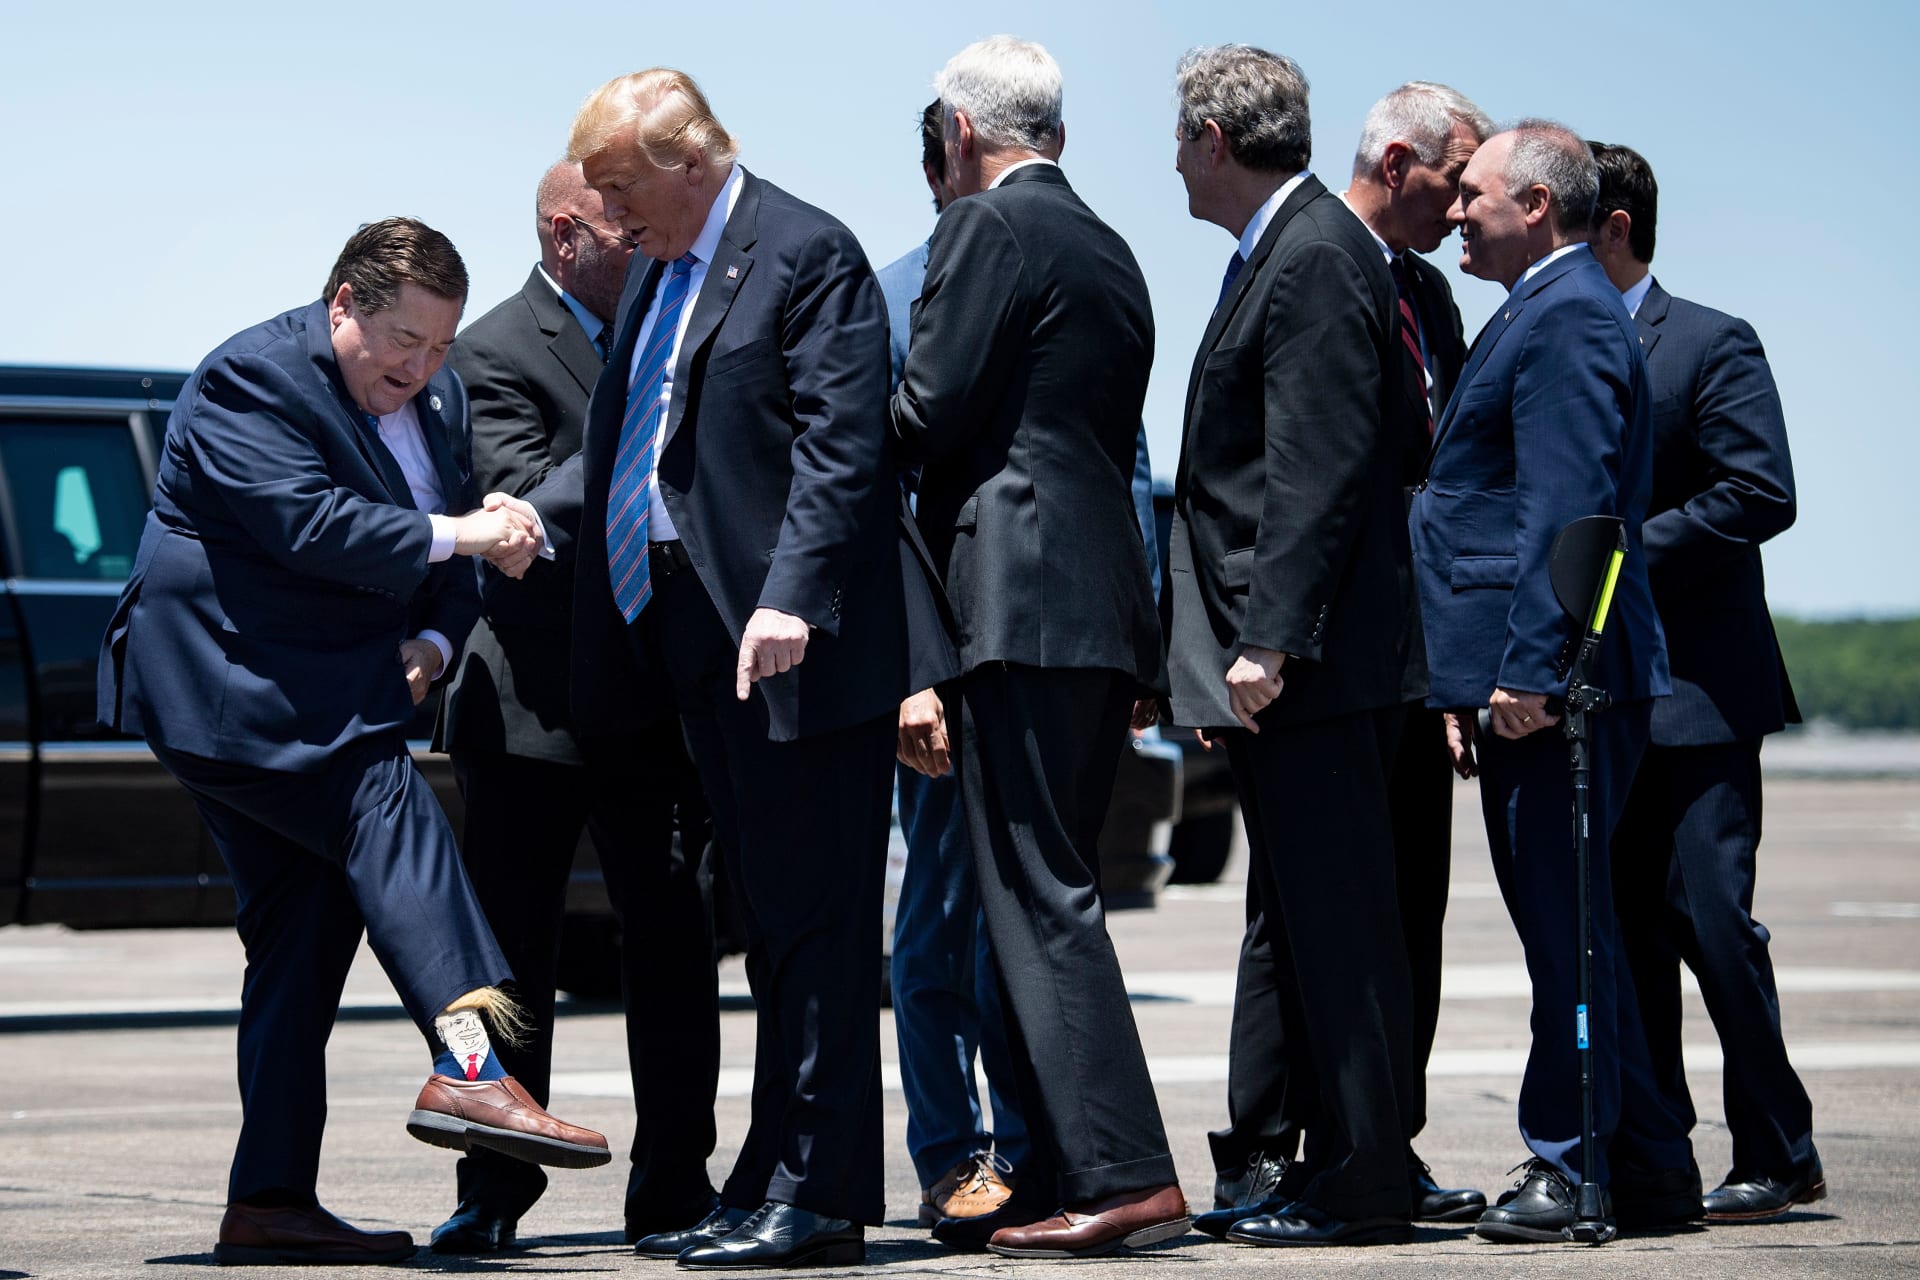 حاكم لويزيانا يرحب بترامب وهو يرتدي جوارب تحمل وجه الرئيس الأمريكي